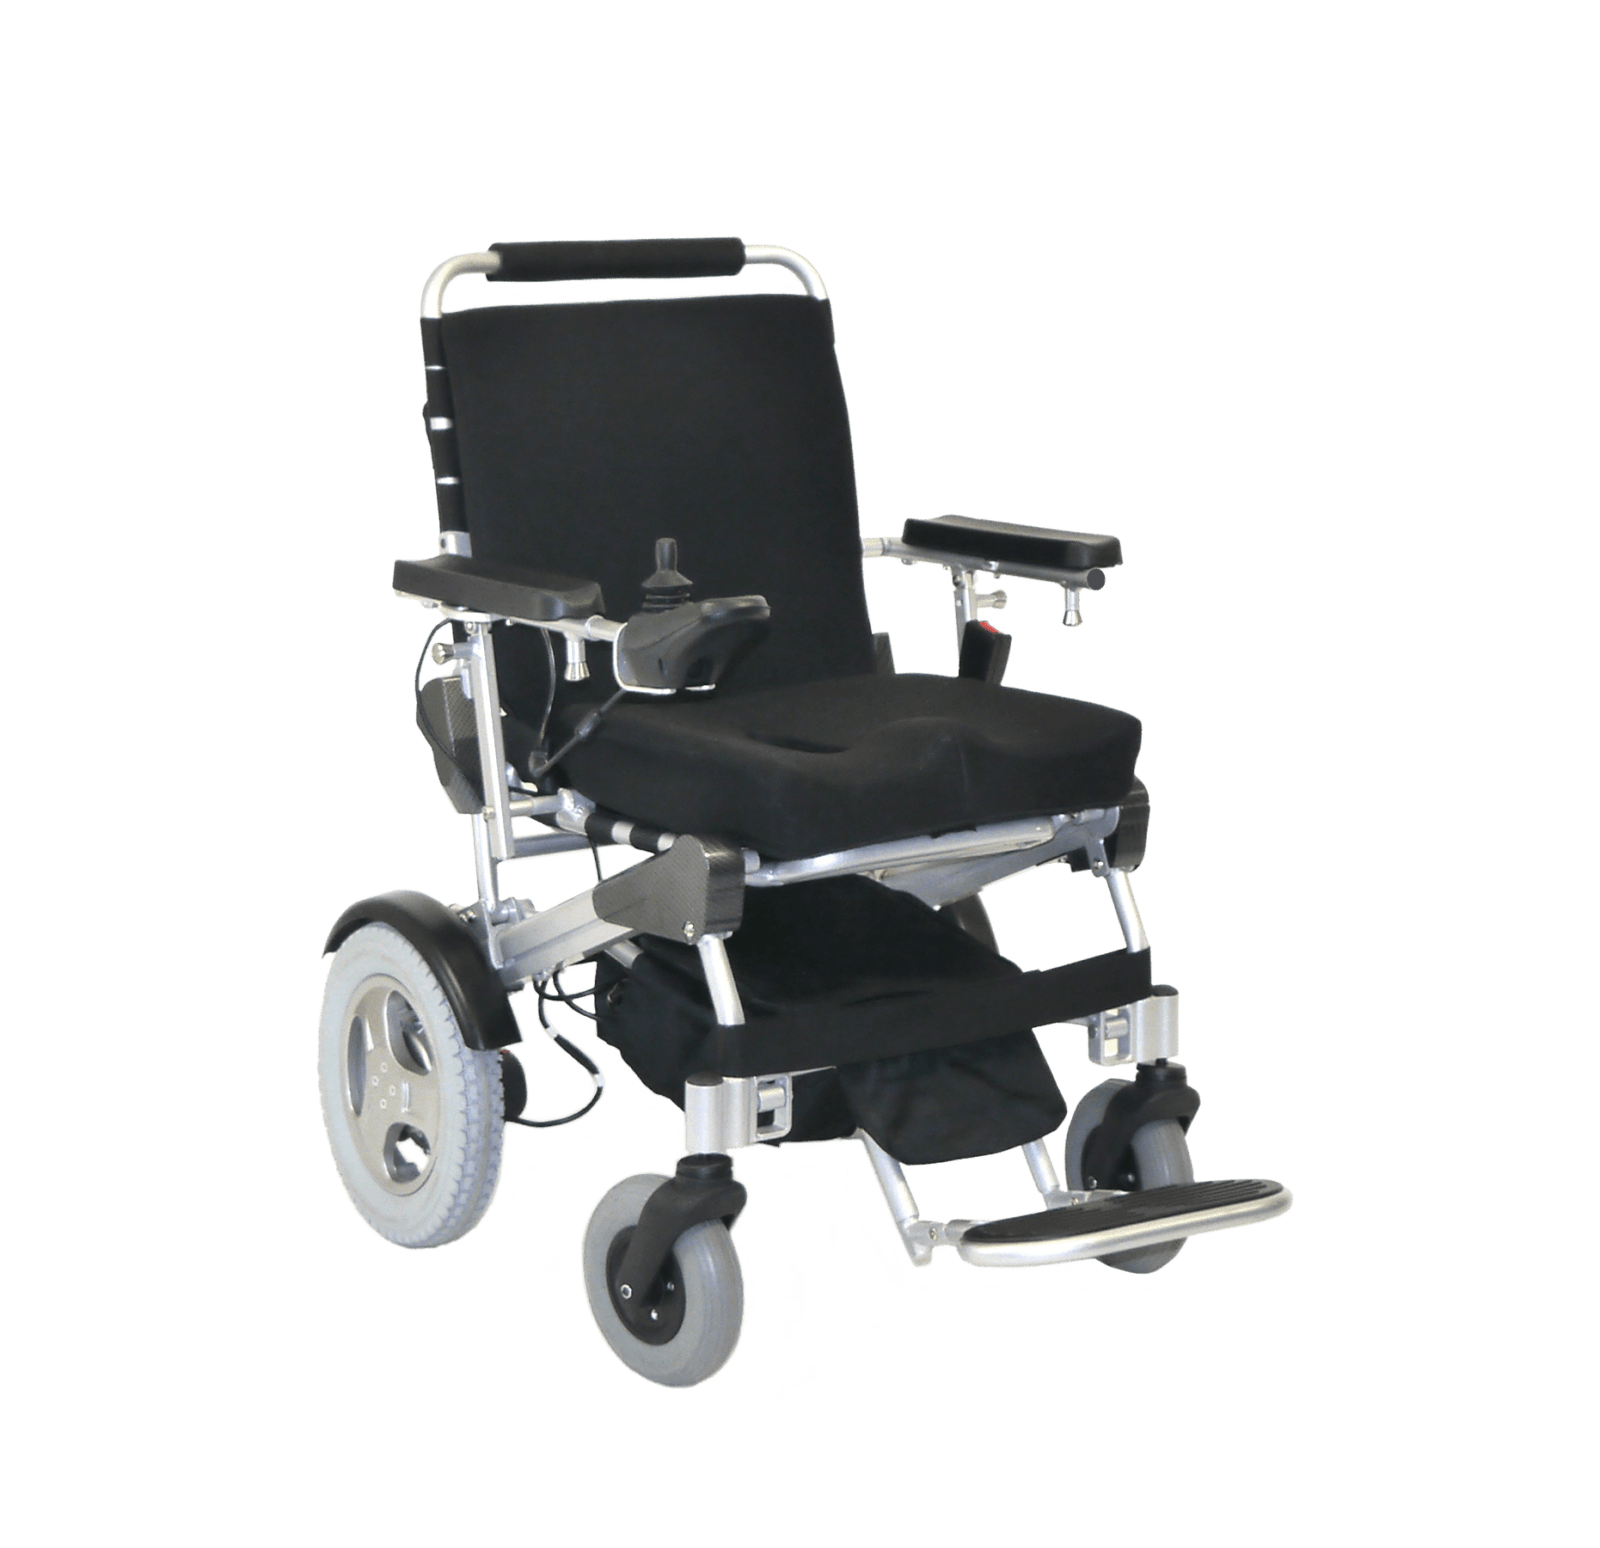 Accessoires fauteuil roulant electrique